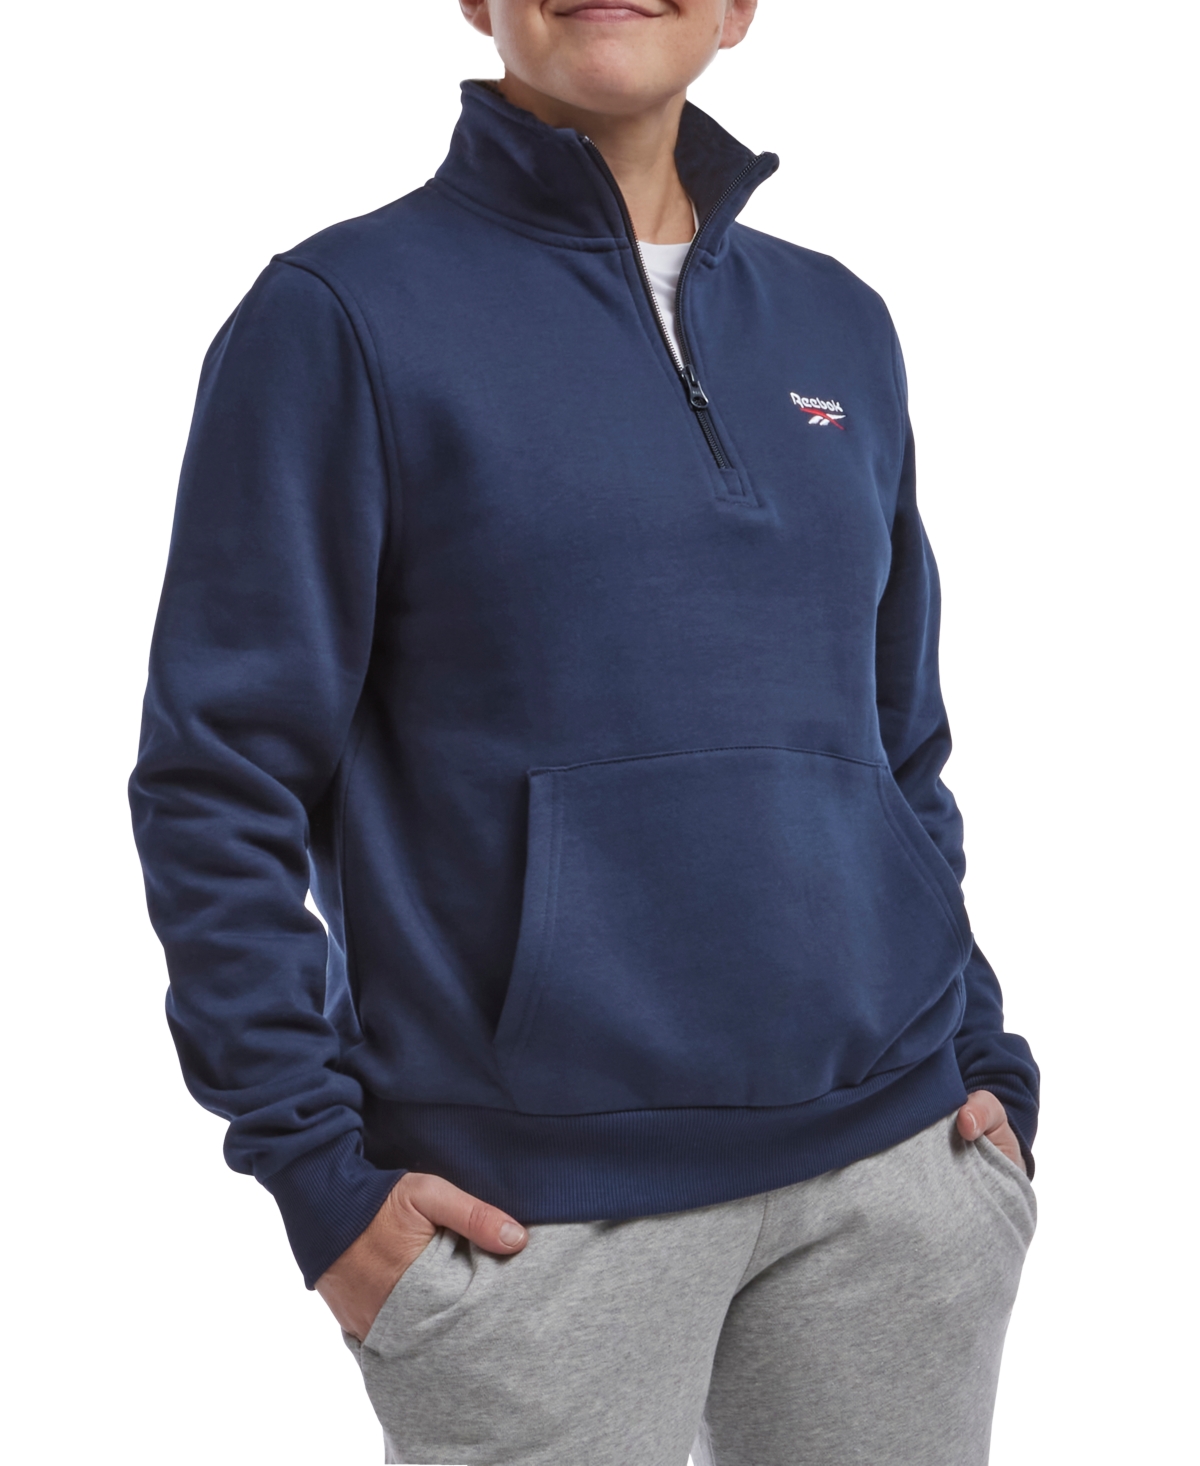 Reebok Women's Quarter-zip Fleece Sweatshirt In Vector Navy